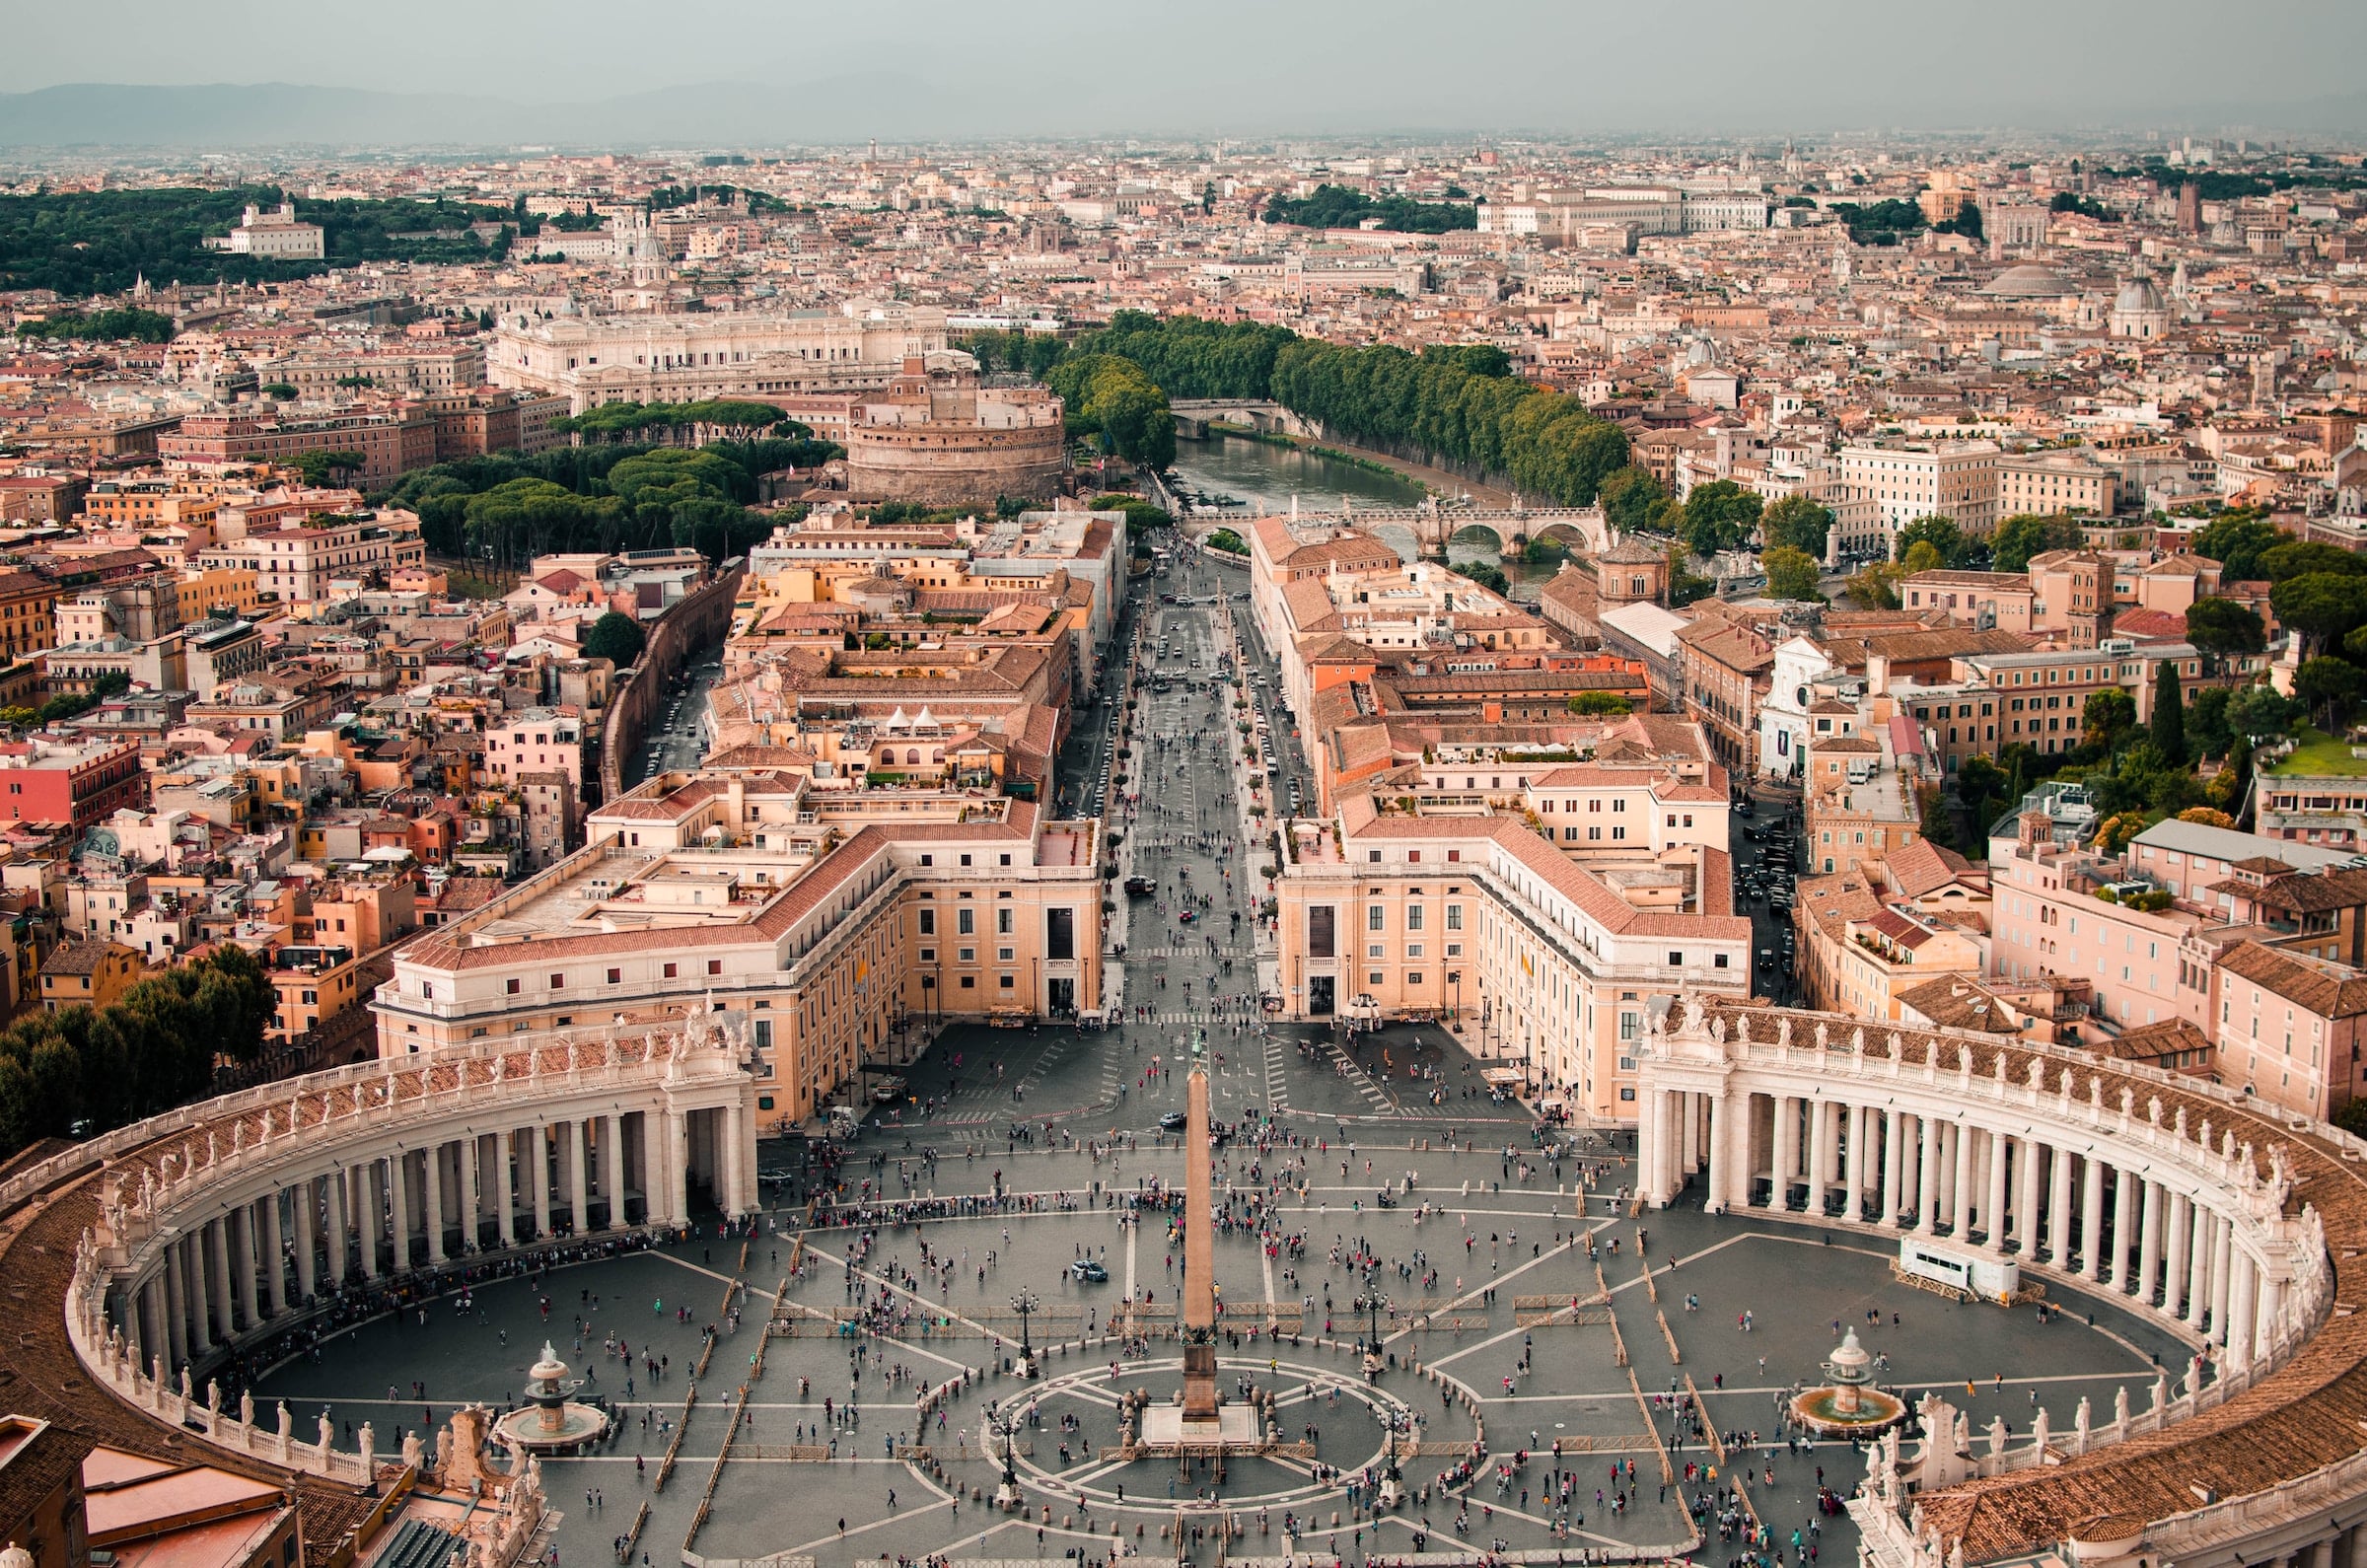 O menor país do mundo em extensão territorial é a Cidade do Vaticano